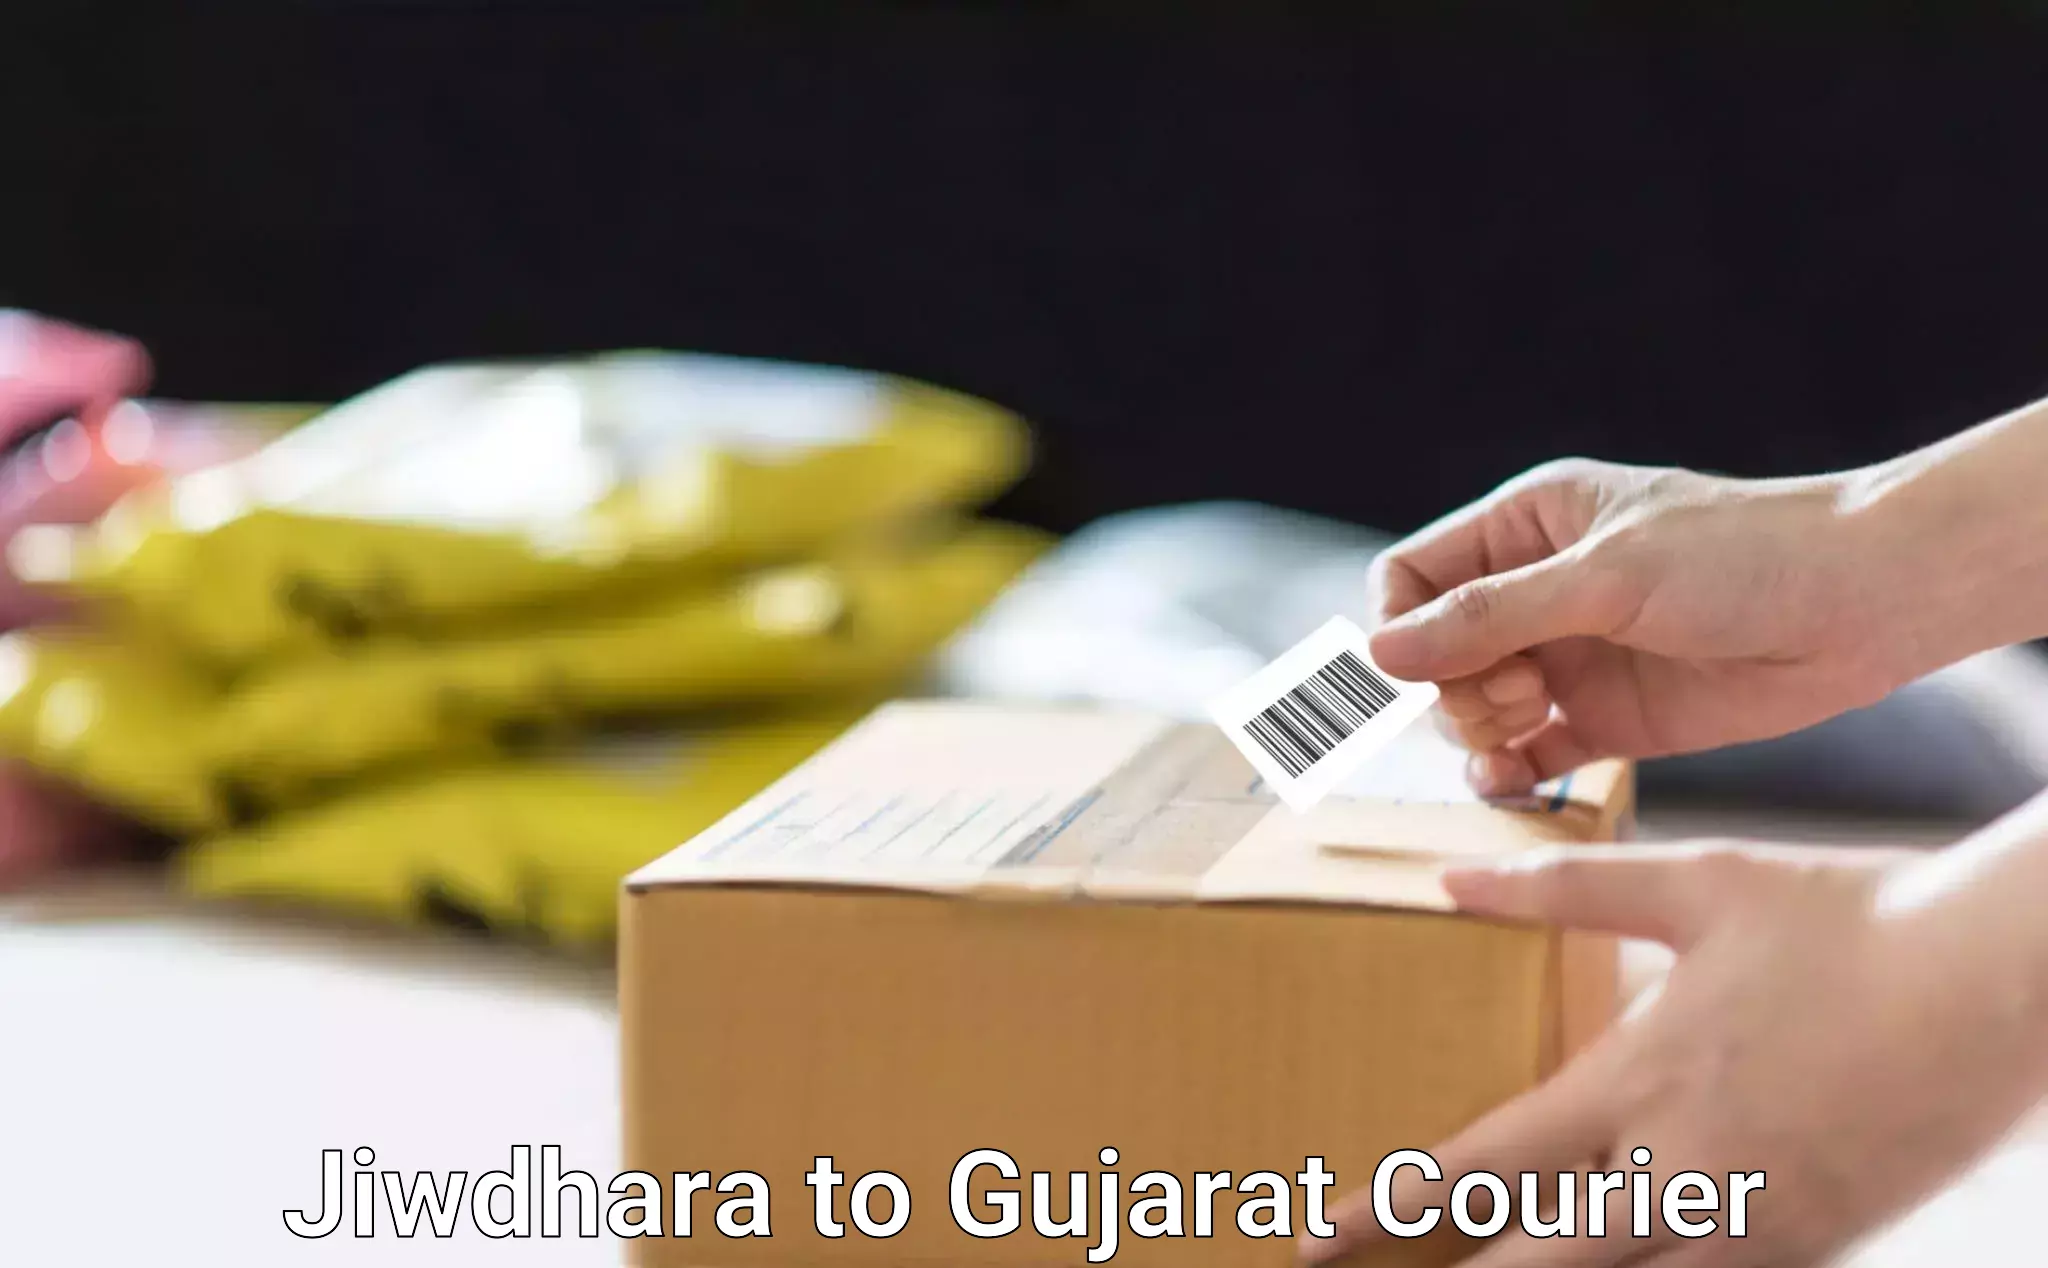 Professional furniture shifting Jiwdhara to Gujarat